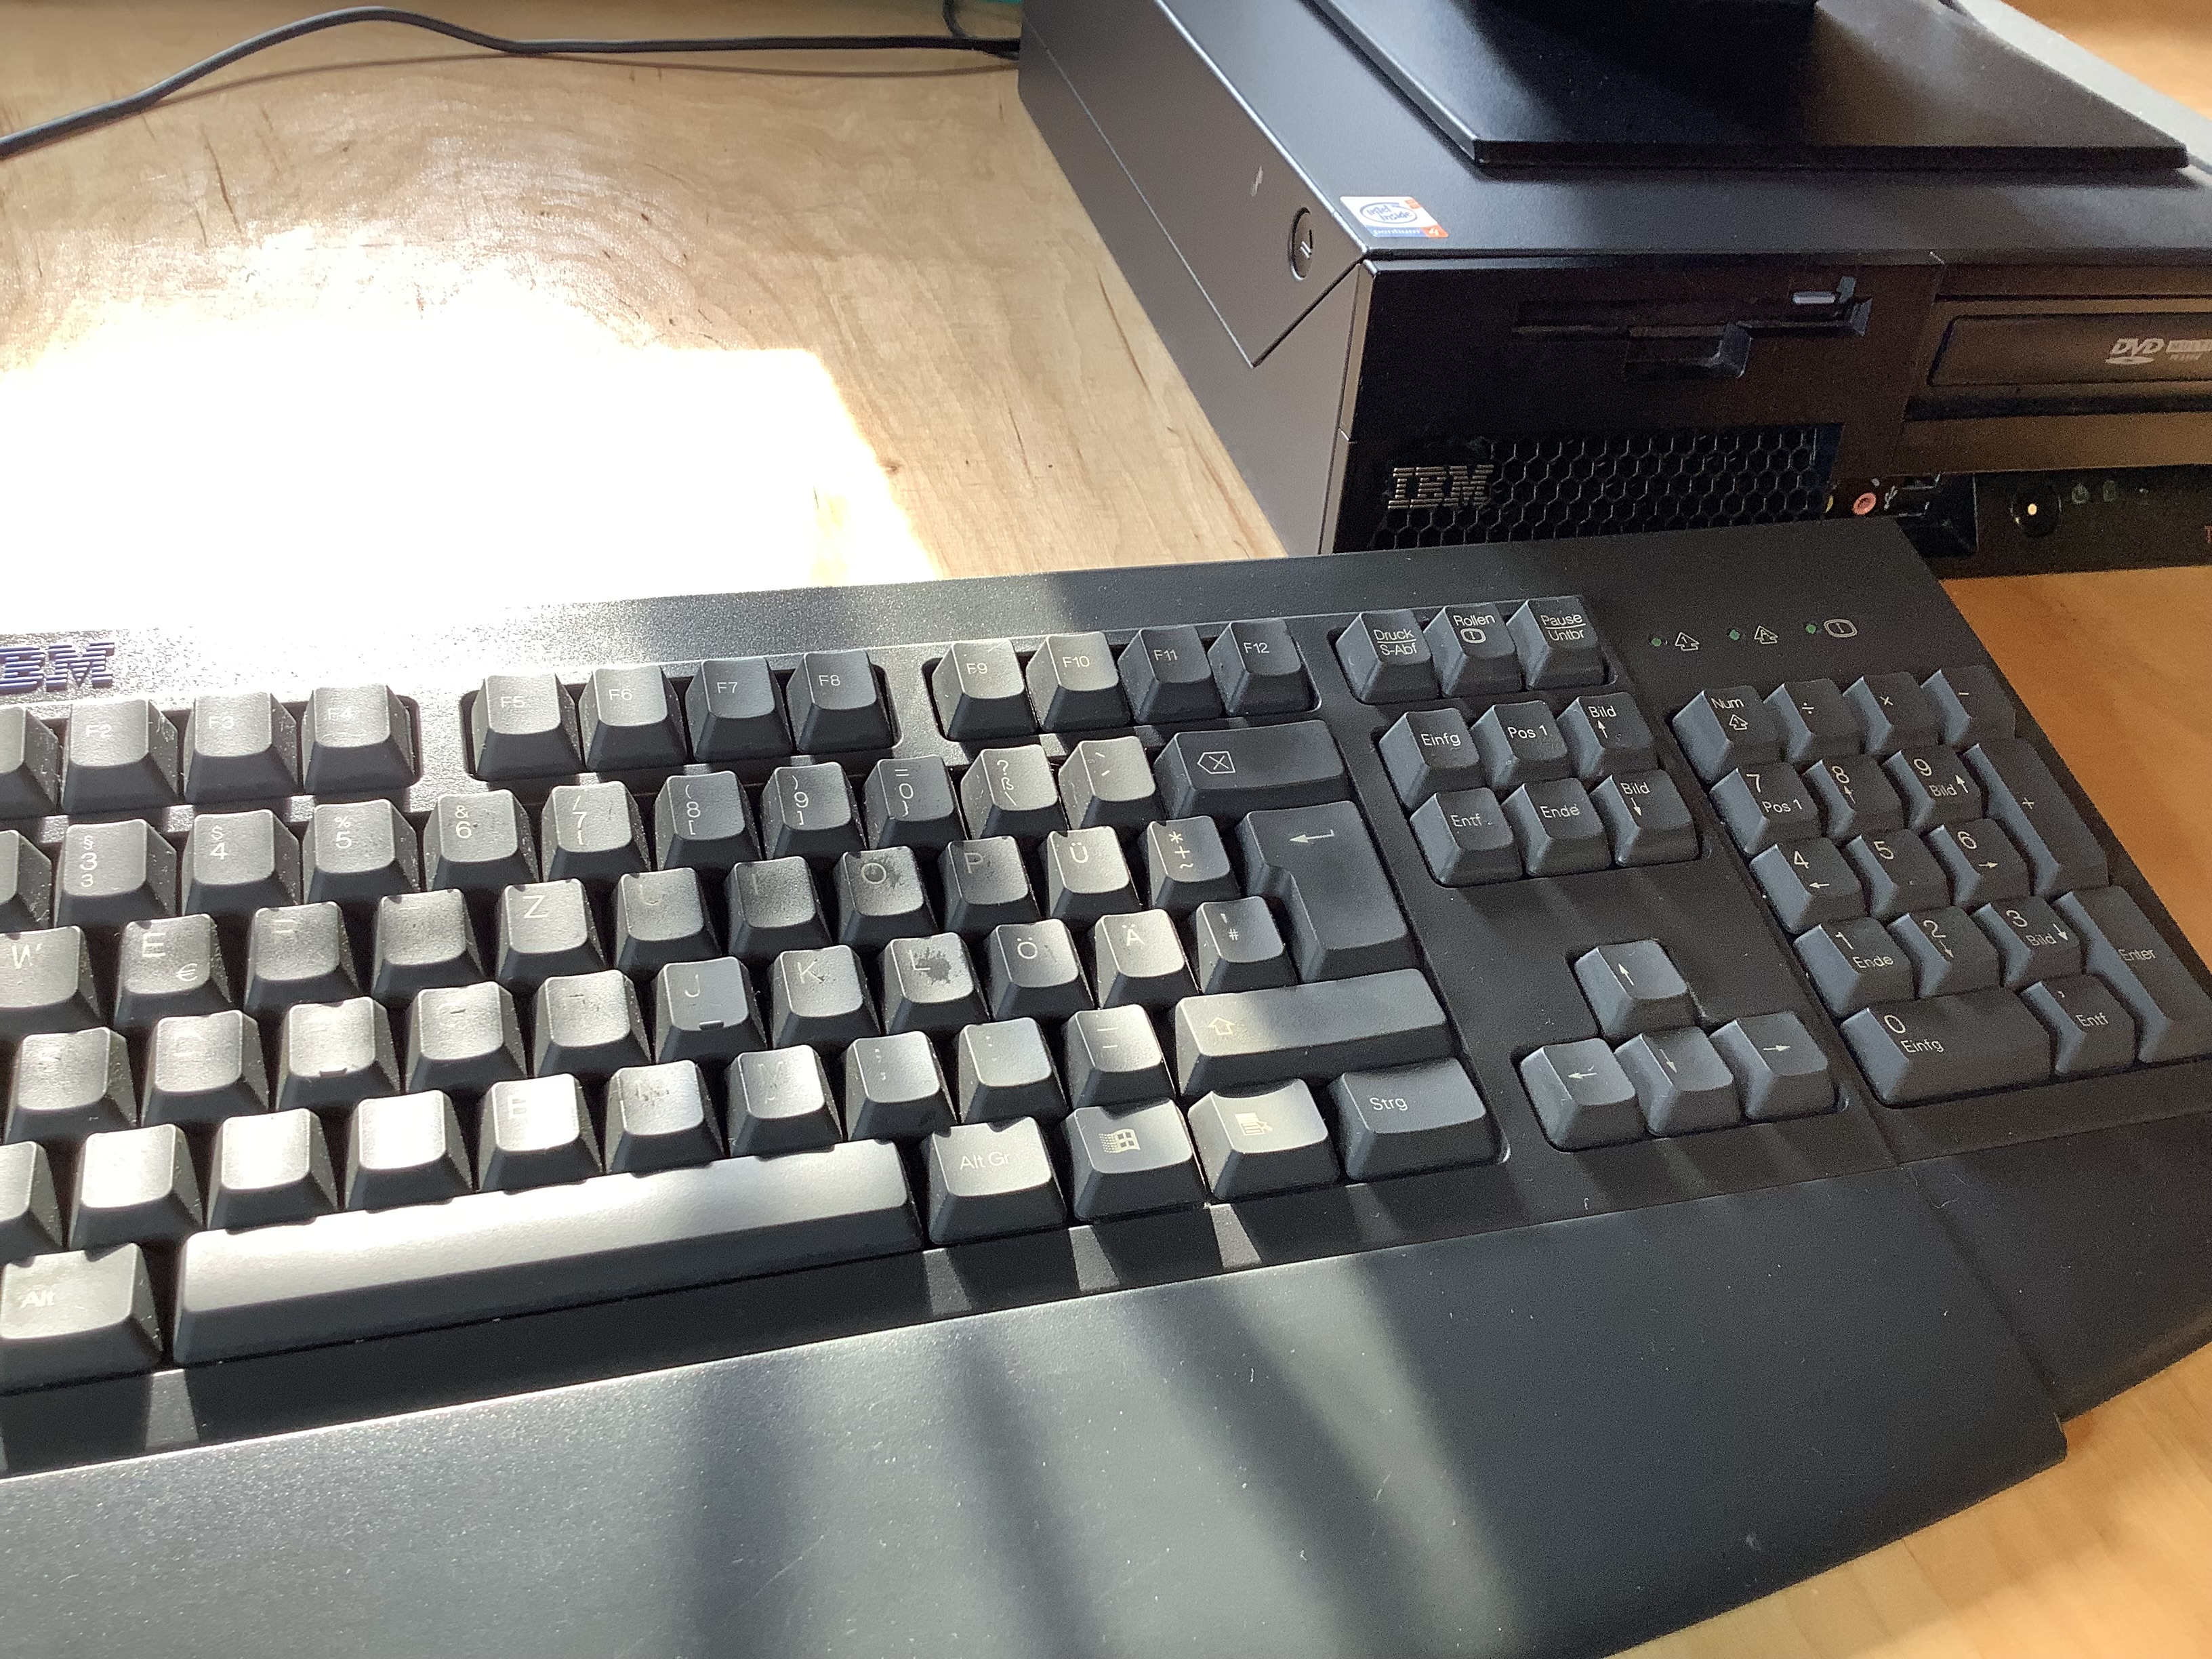 IBM Tastatur